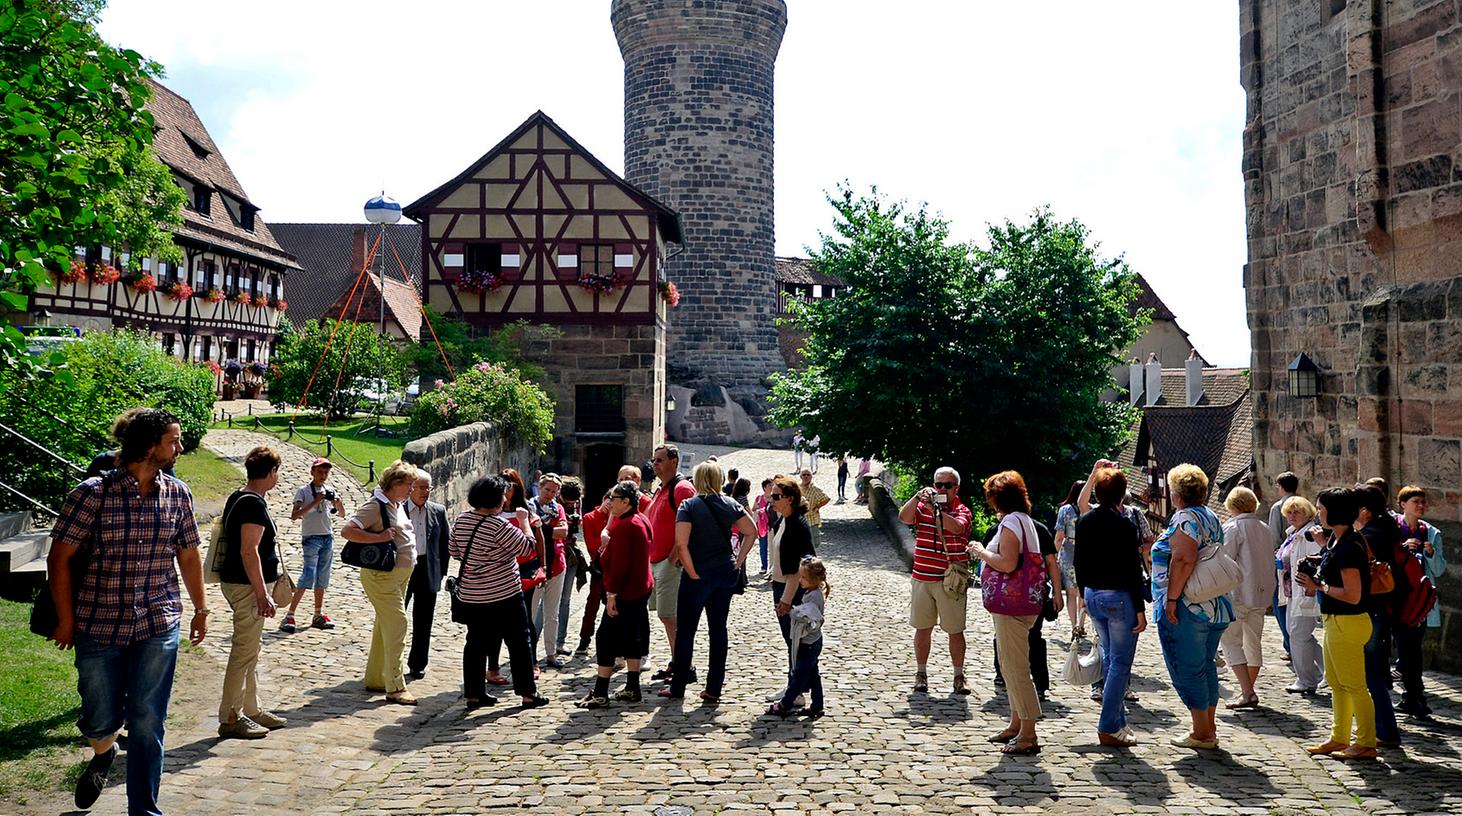 Ein Klassiker unter den Ausflugszielen: Die Nürnberger Kaiserburg lockt jährlich unzählige Touristen.